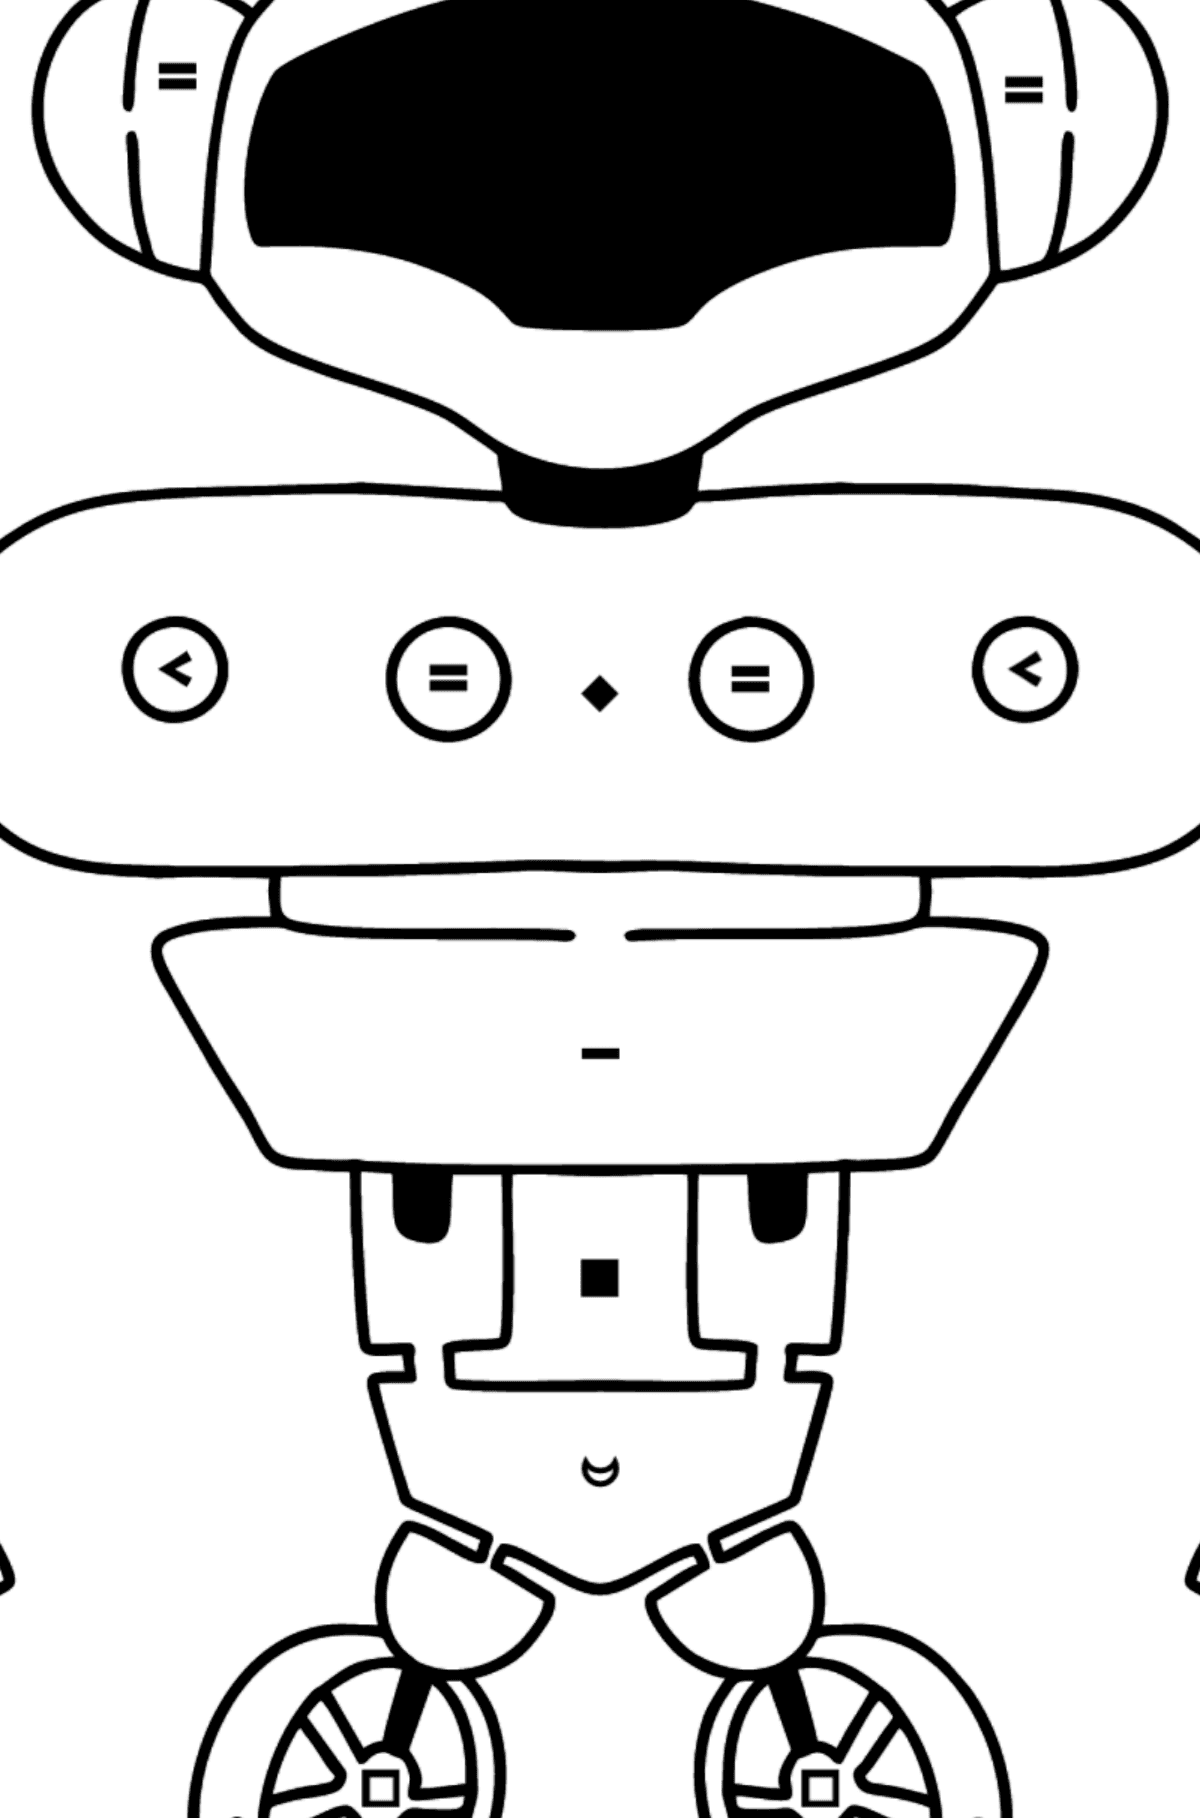 Coloriage - Robot mignon - Coloriage par Symboles pour les Enfants